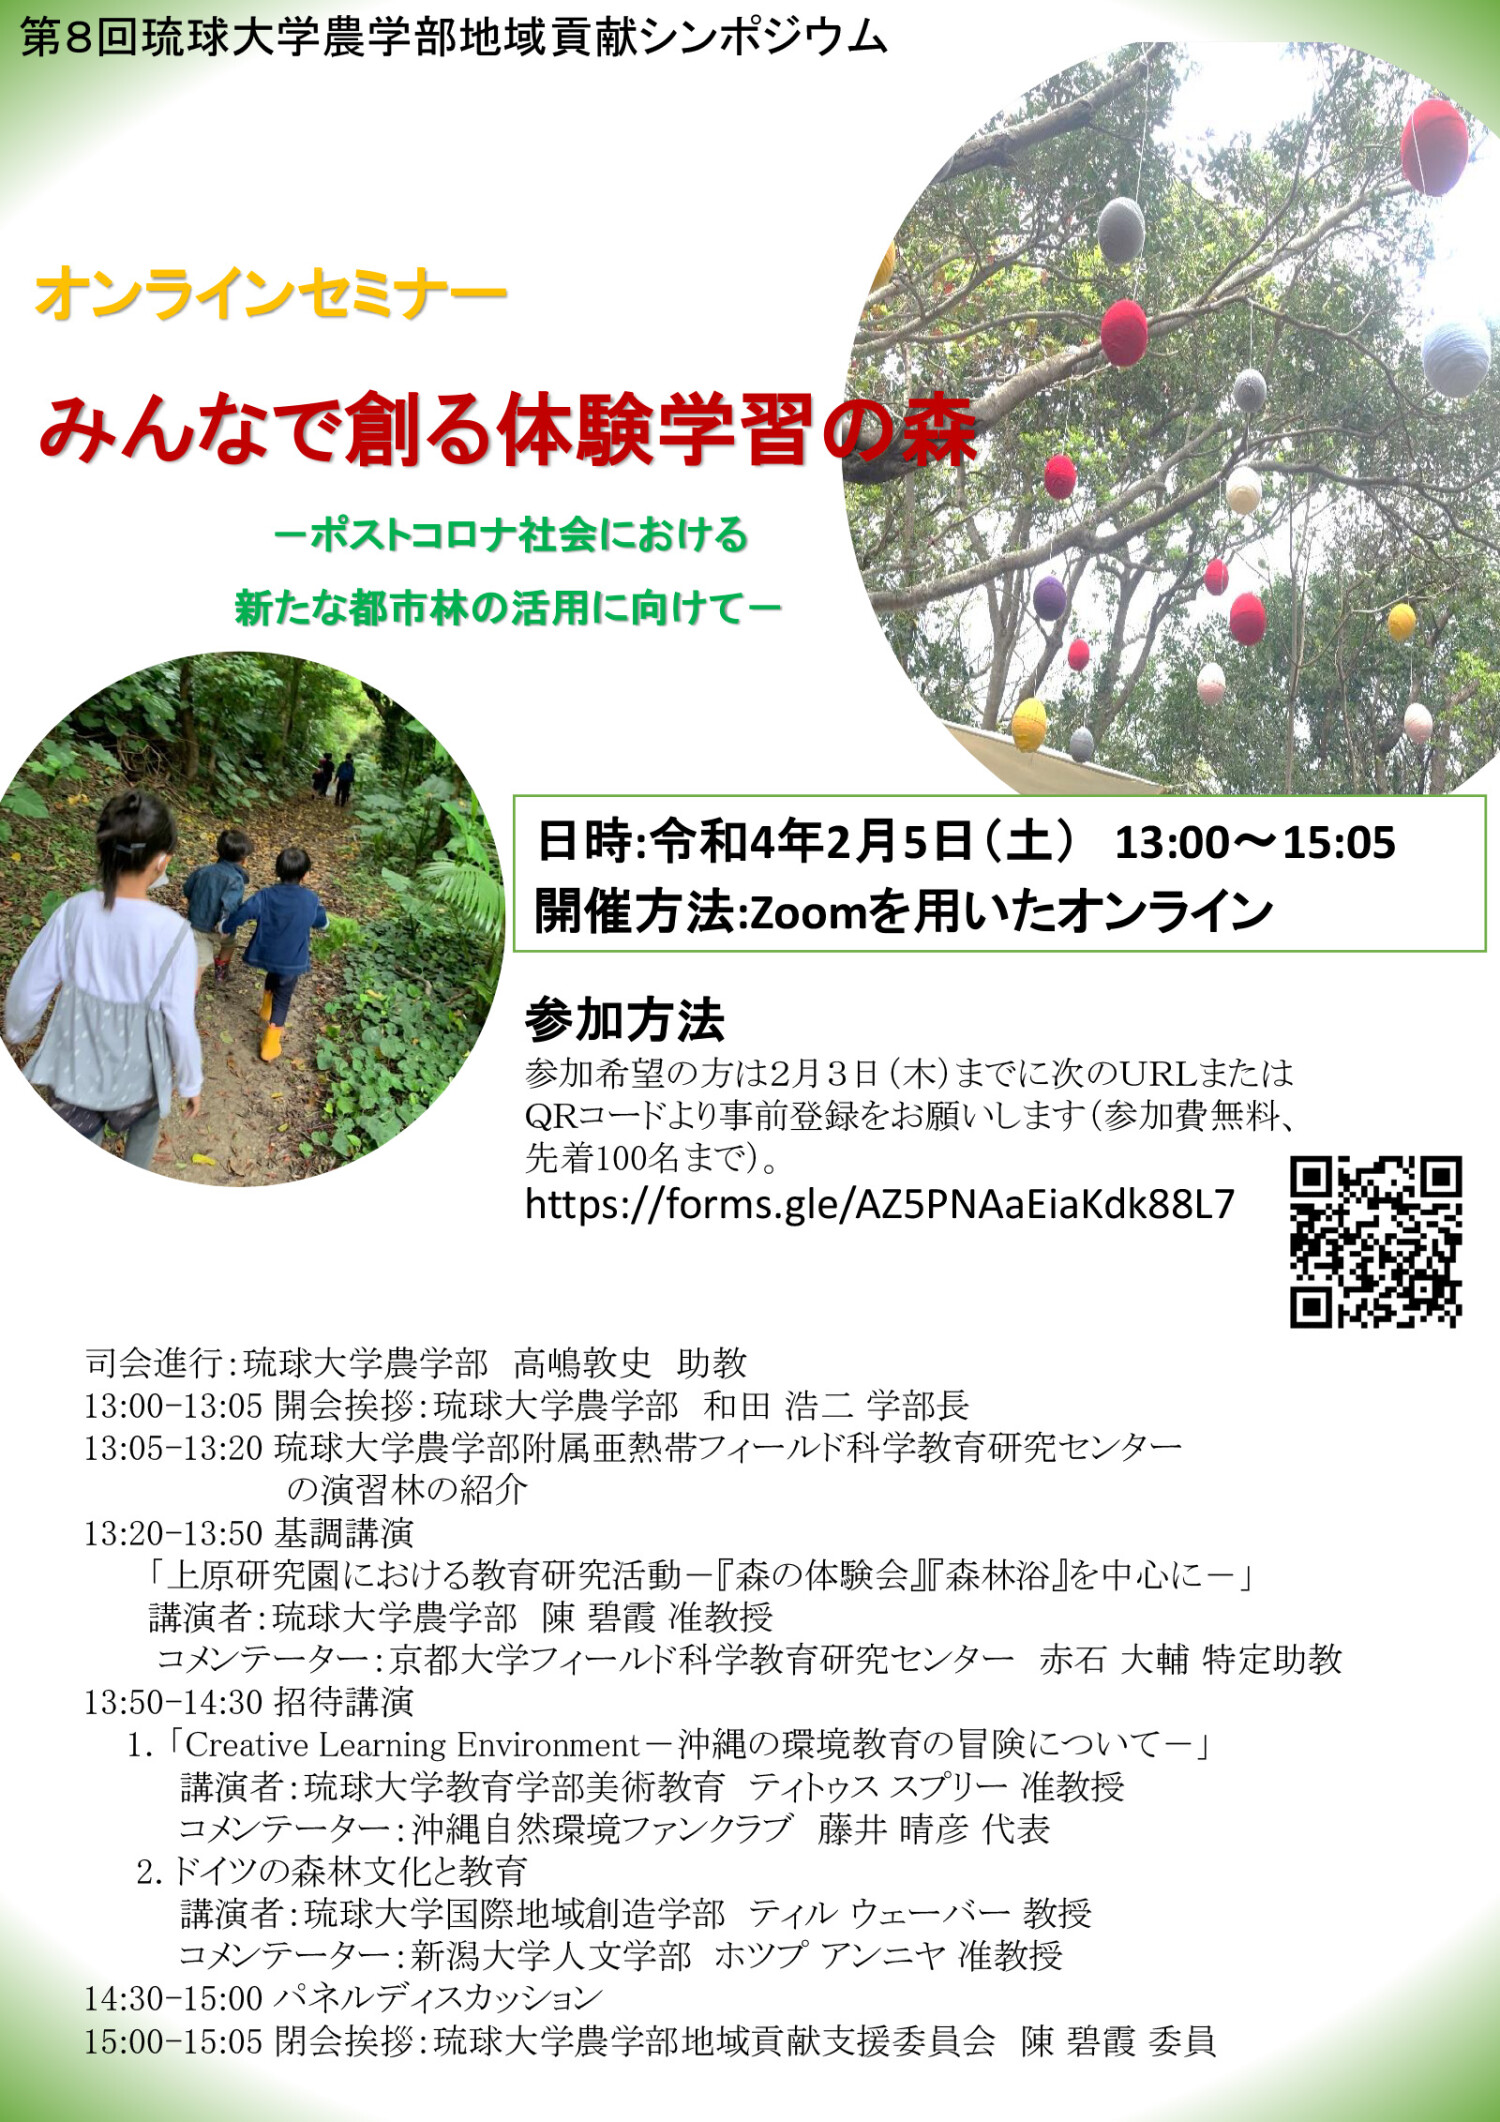 第8回 琉球大学農学部地域貢献シンポジウム「みんなで創る体験学習の森